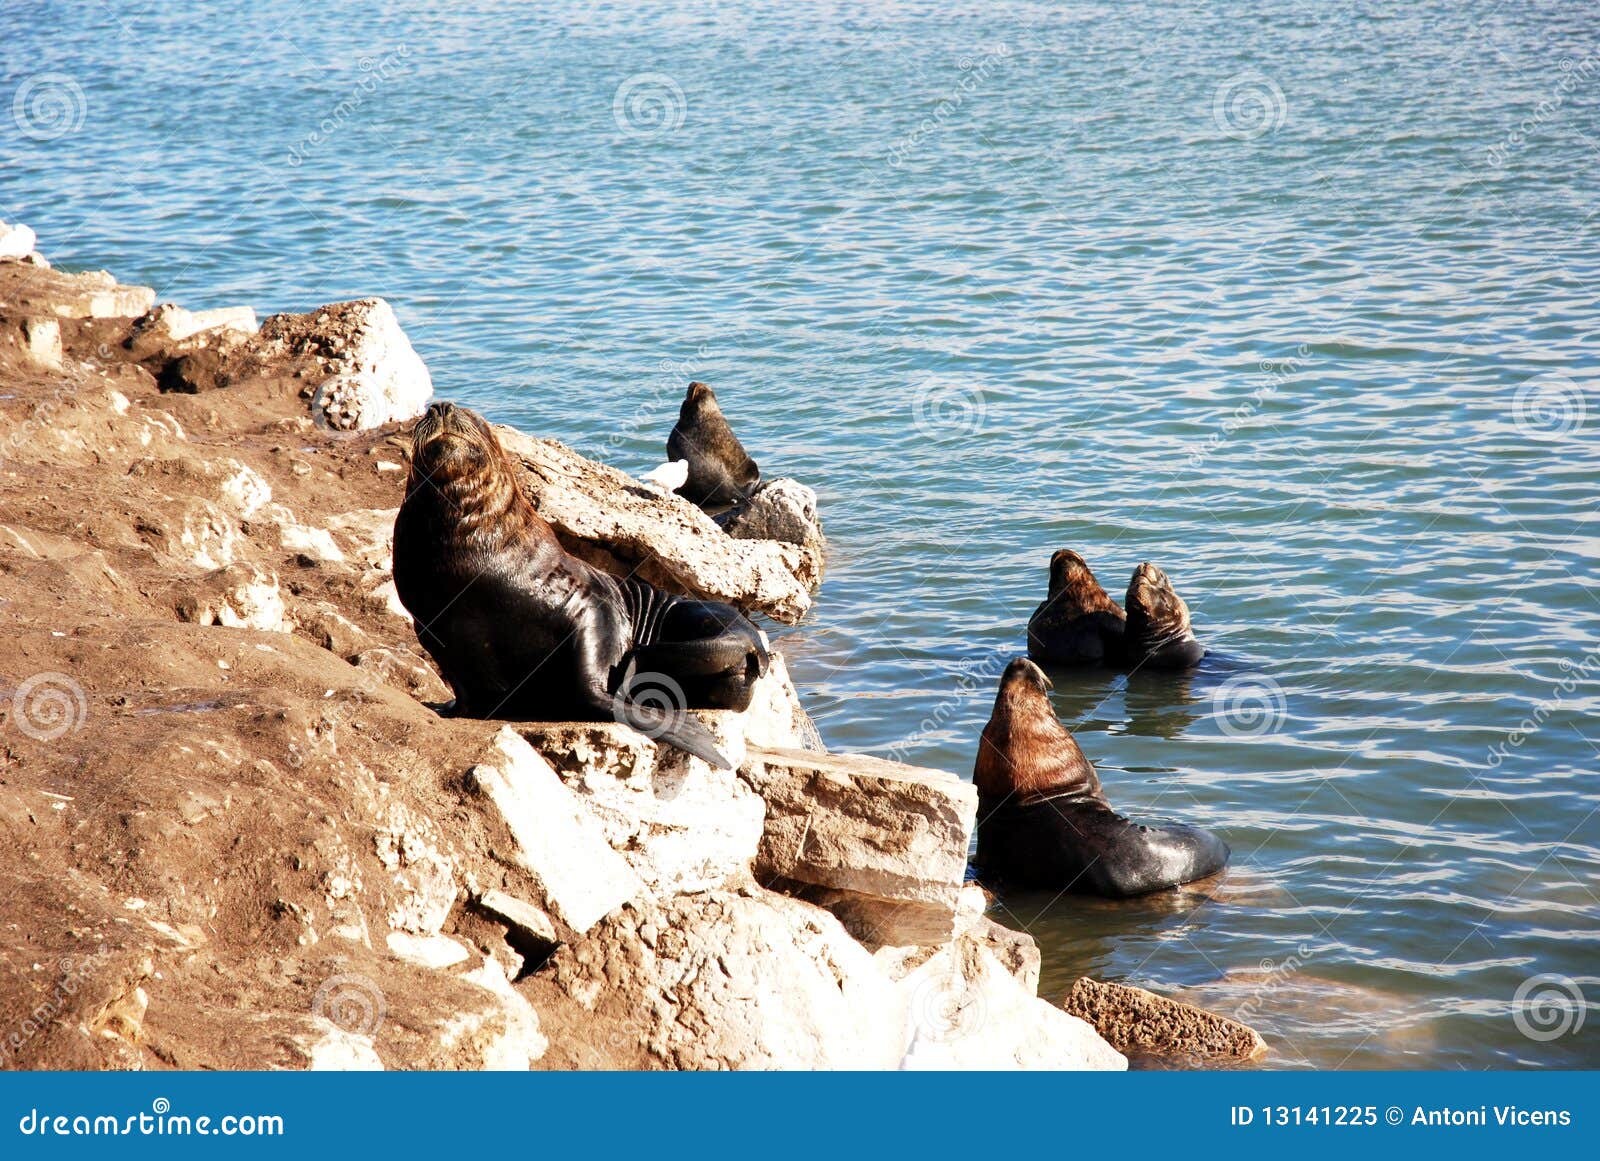 seals in mar de plata (argentina)